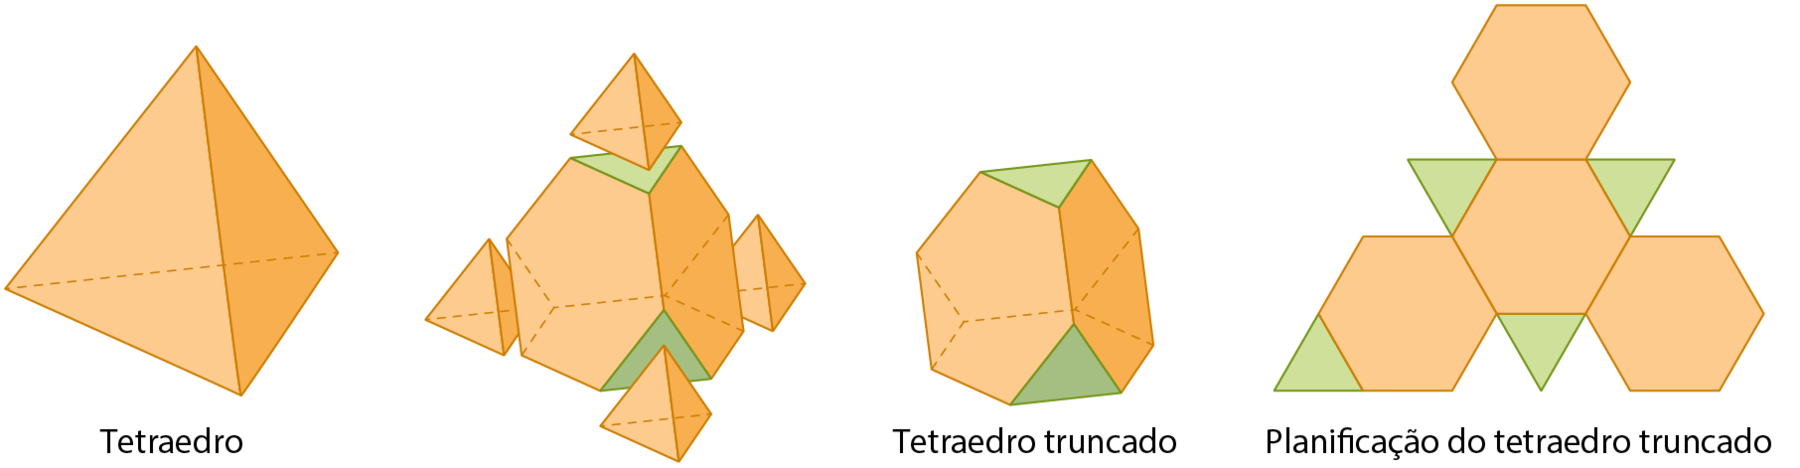 Ilustração. Sequência de 3 imagens representando figuras tridimensionais e sua planificação.

A primeira imagem é uma pirâmide de base triangular com todas as faces iguais chamada tetraedo. 

A segunda imagem é equivalente a cortes feitos abaixo dos vértices da primeira figura, obtendo 3 tetraedos menores e uma figura tridimensional restante.

A terceira imagem é a figura tridimensional restante chamada tetraedro truncado.

A planificação é composta de 4 hexágonos regulares iguais e 4 triângulos equiláteros iguais.